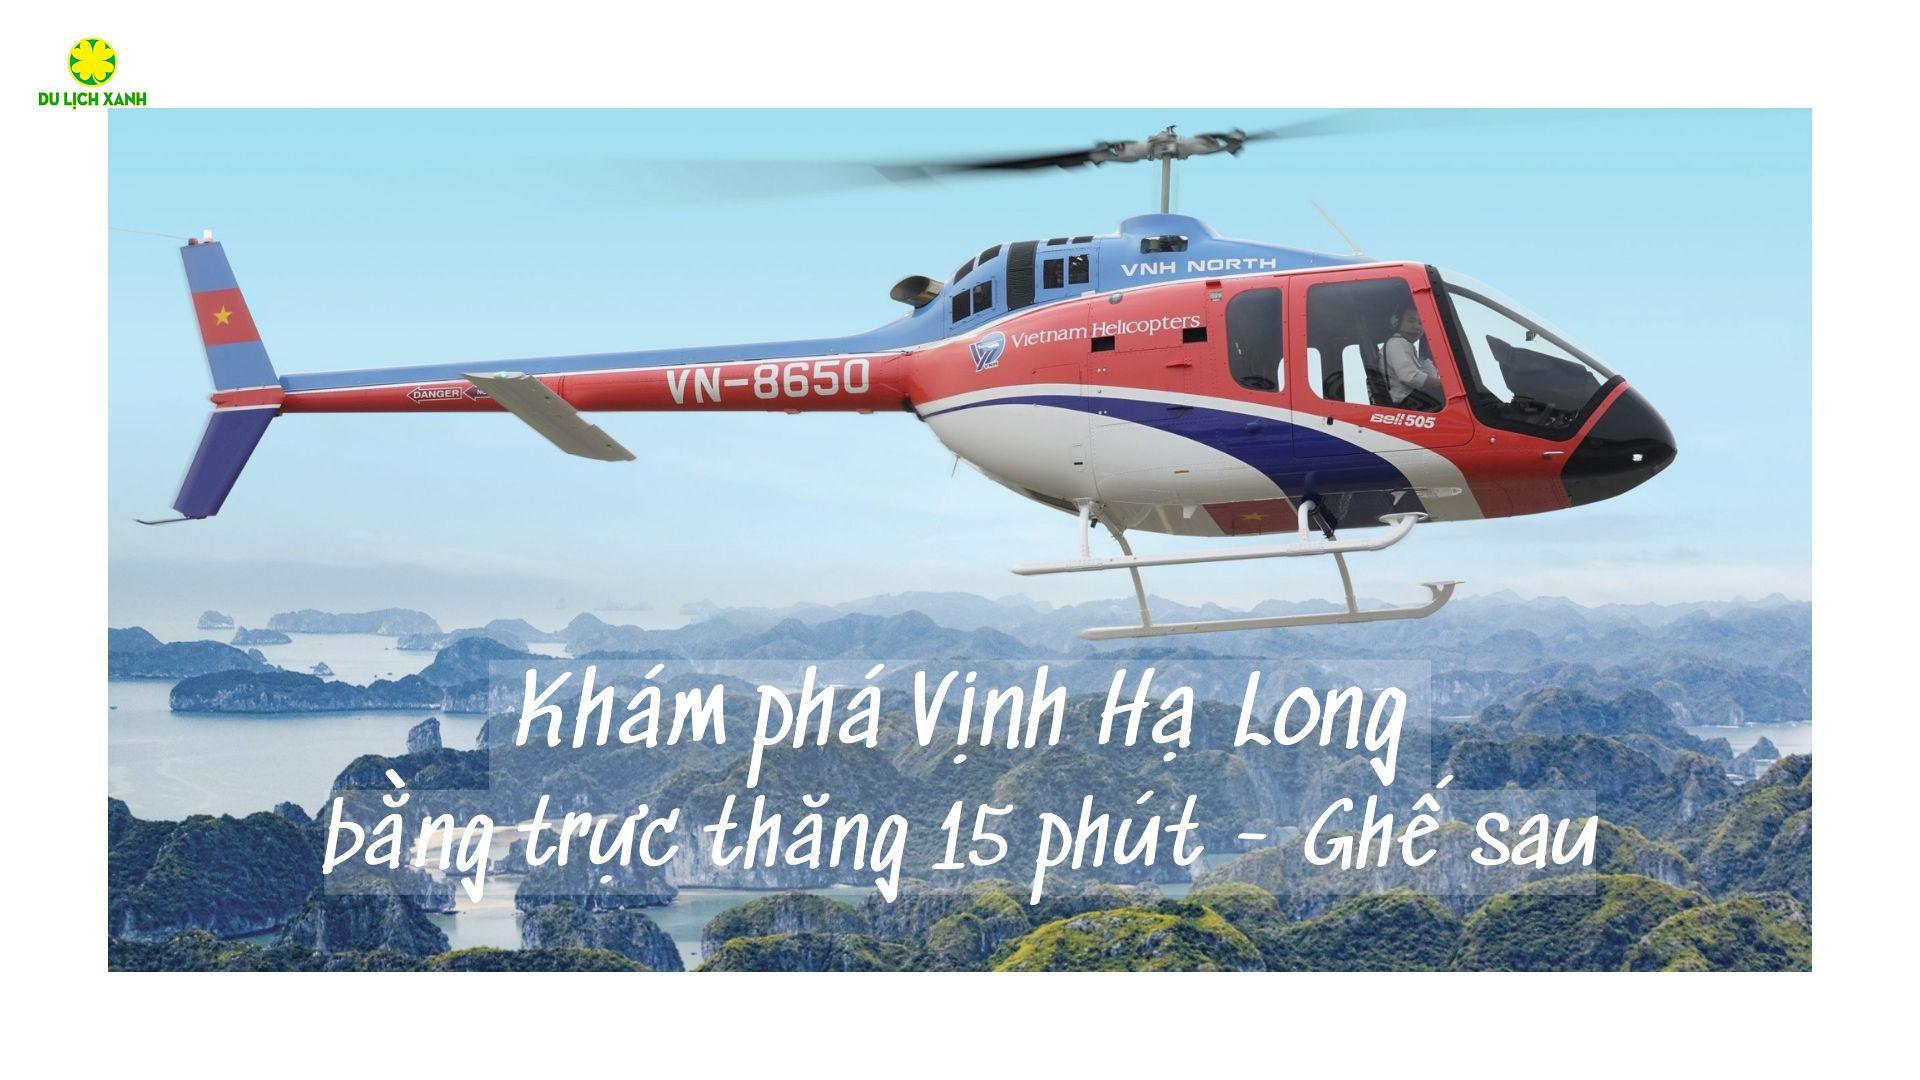 Tour ngắm cảnh vịnh Hạ Long bằng trực thăng 15 phút | Ghế sau 